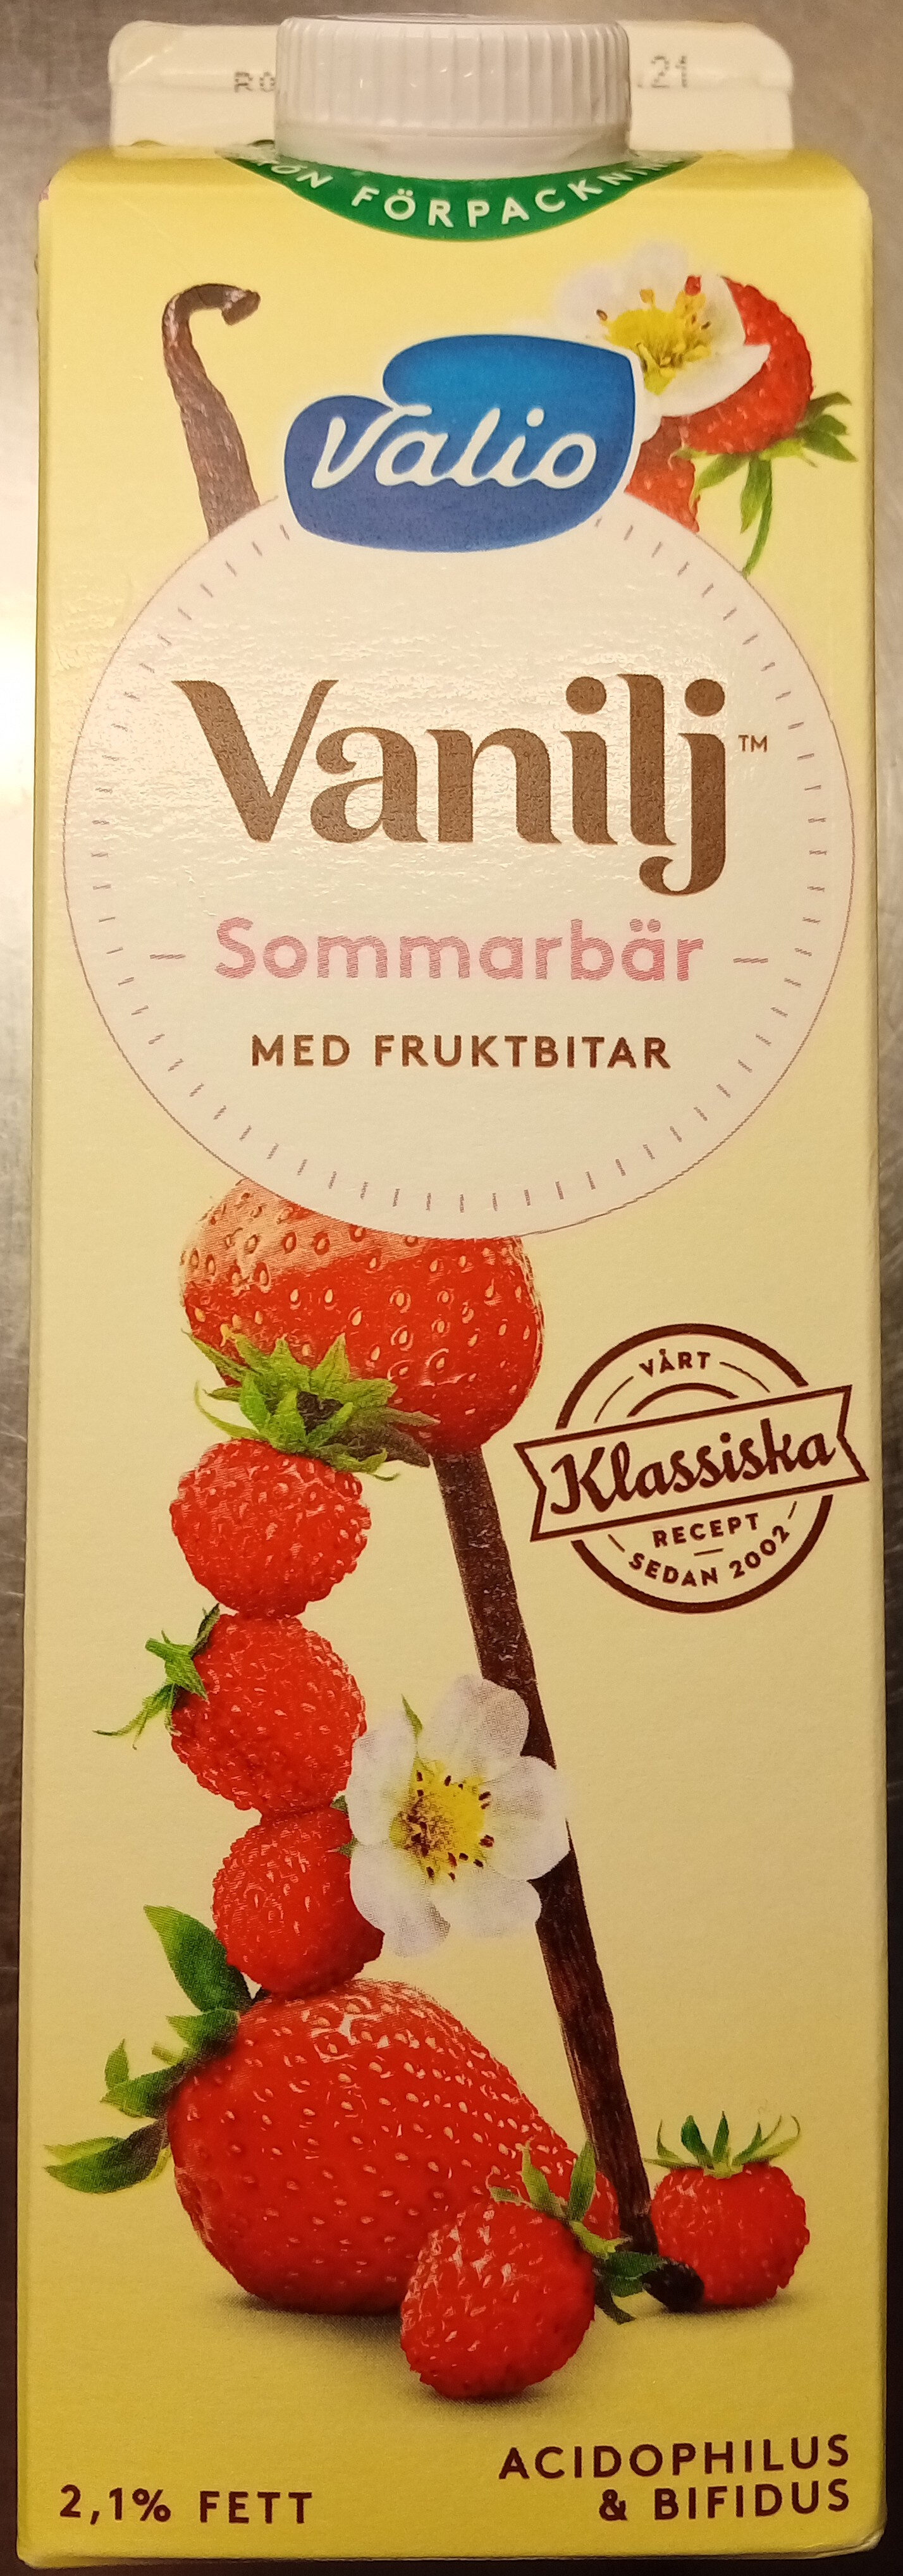 Valio Vanilj Sommarbär med fruktbitar - Produkt